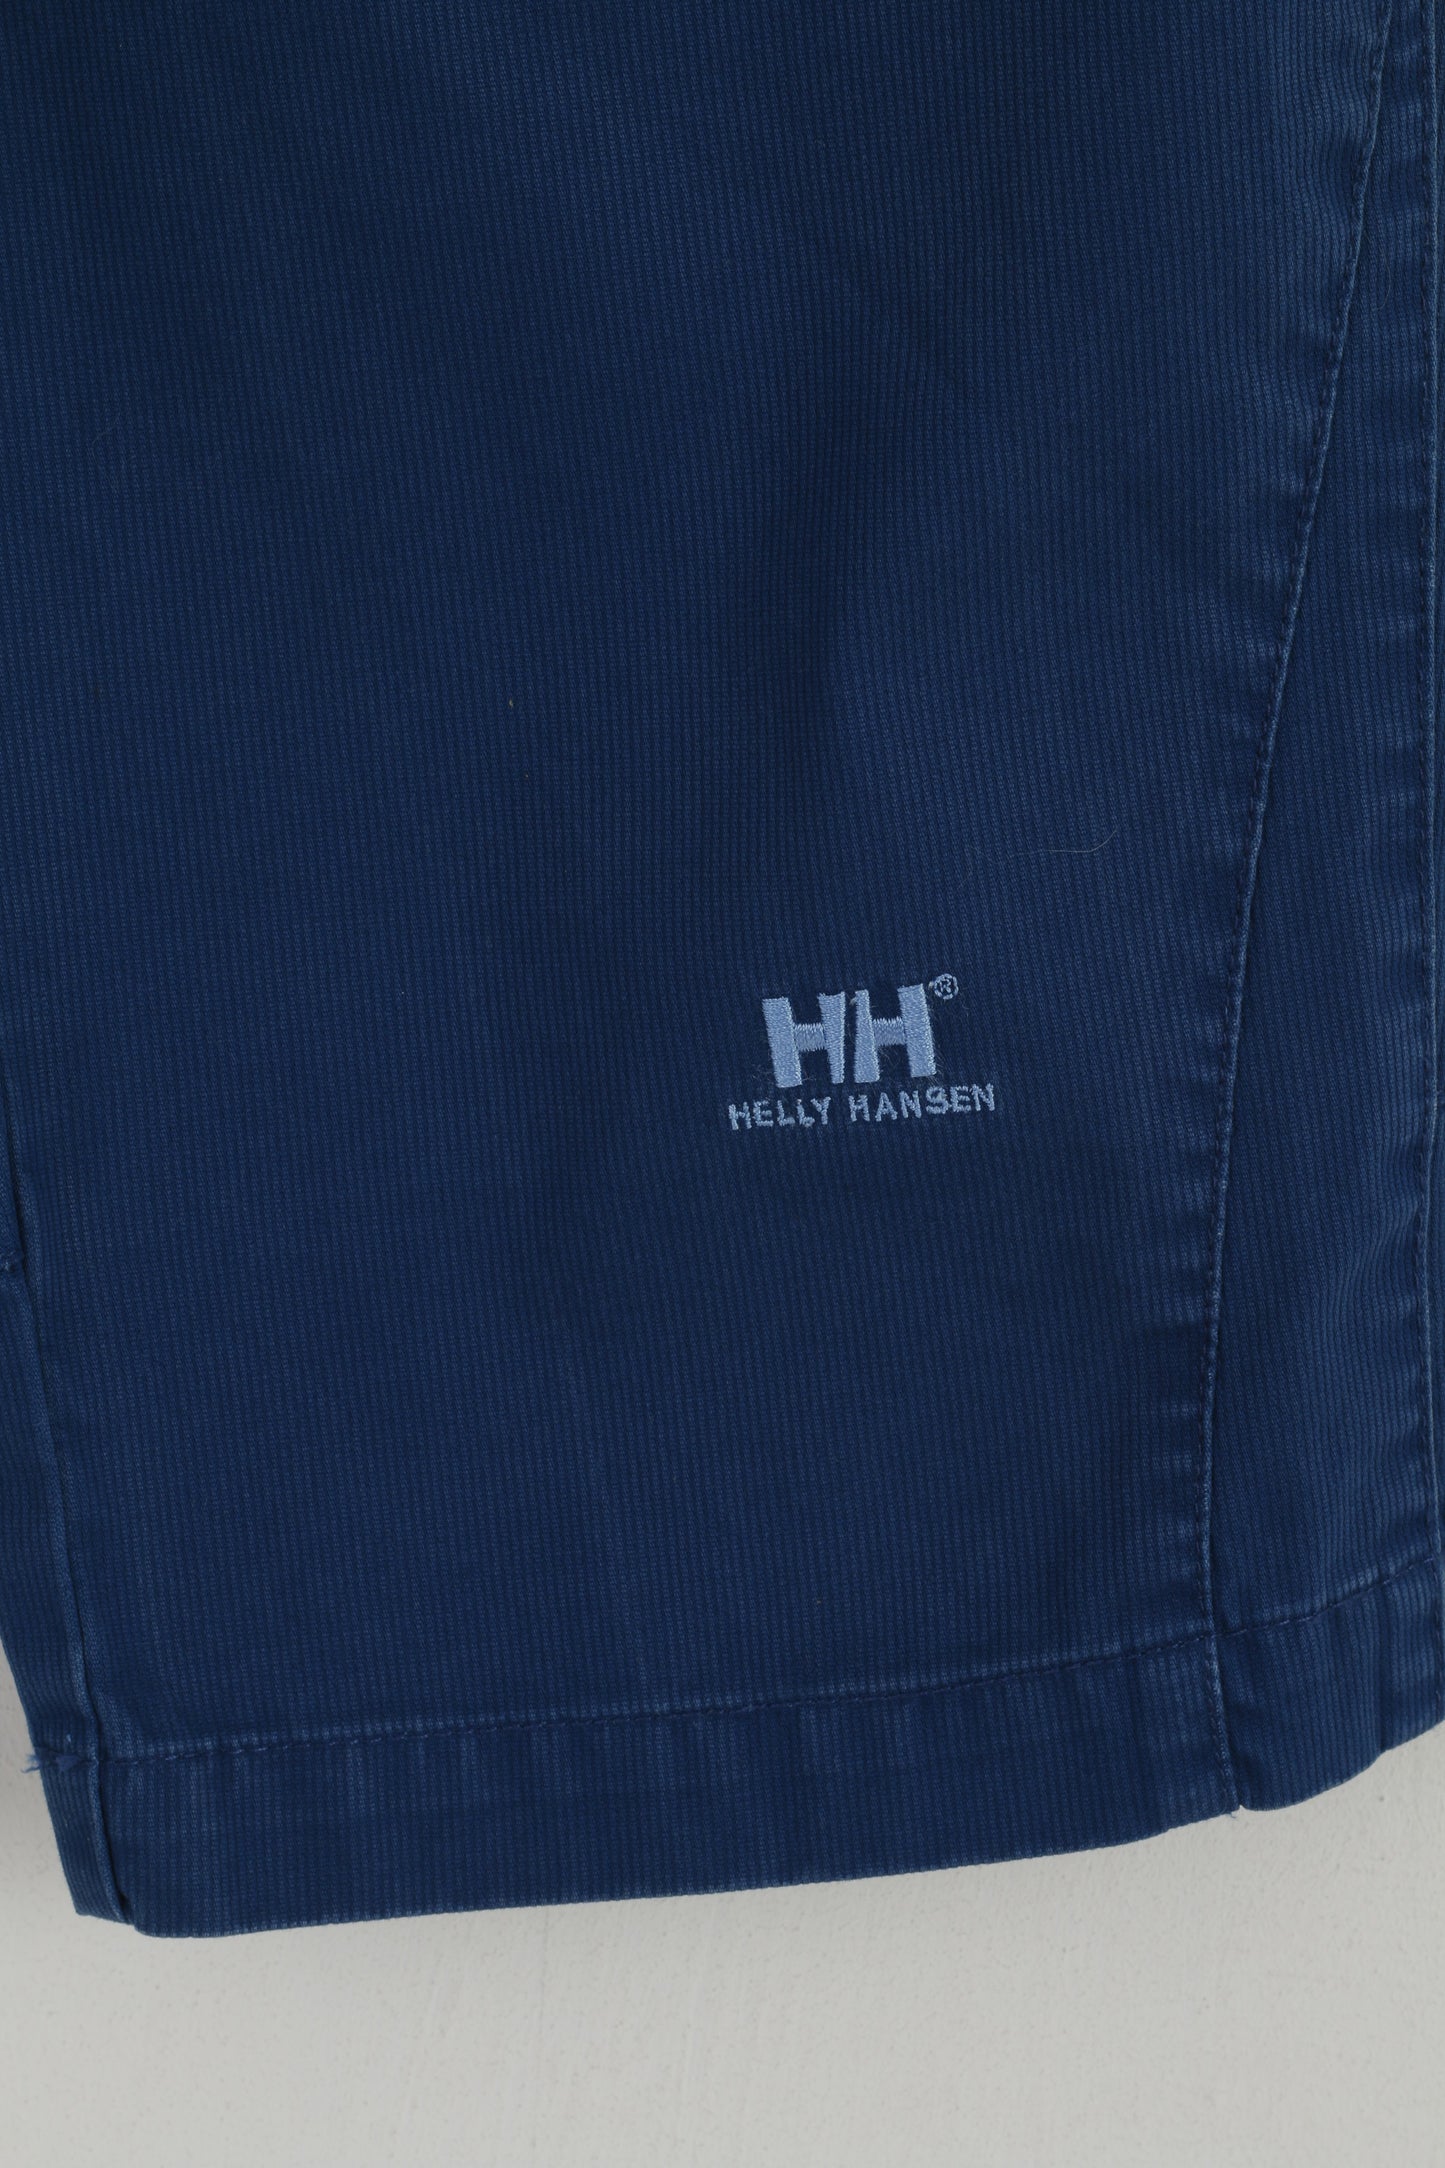 Helly Hansen Women S Shorts Navy Cotton Emroidered Capri Bermuda